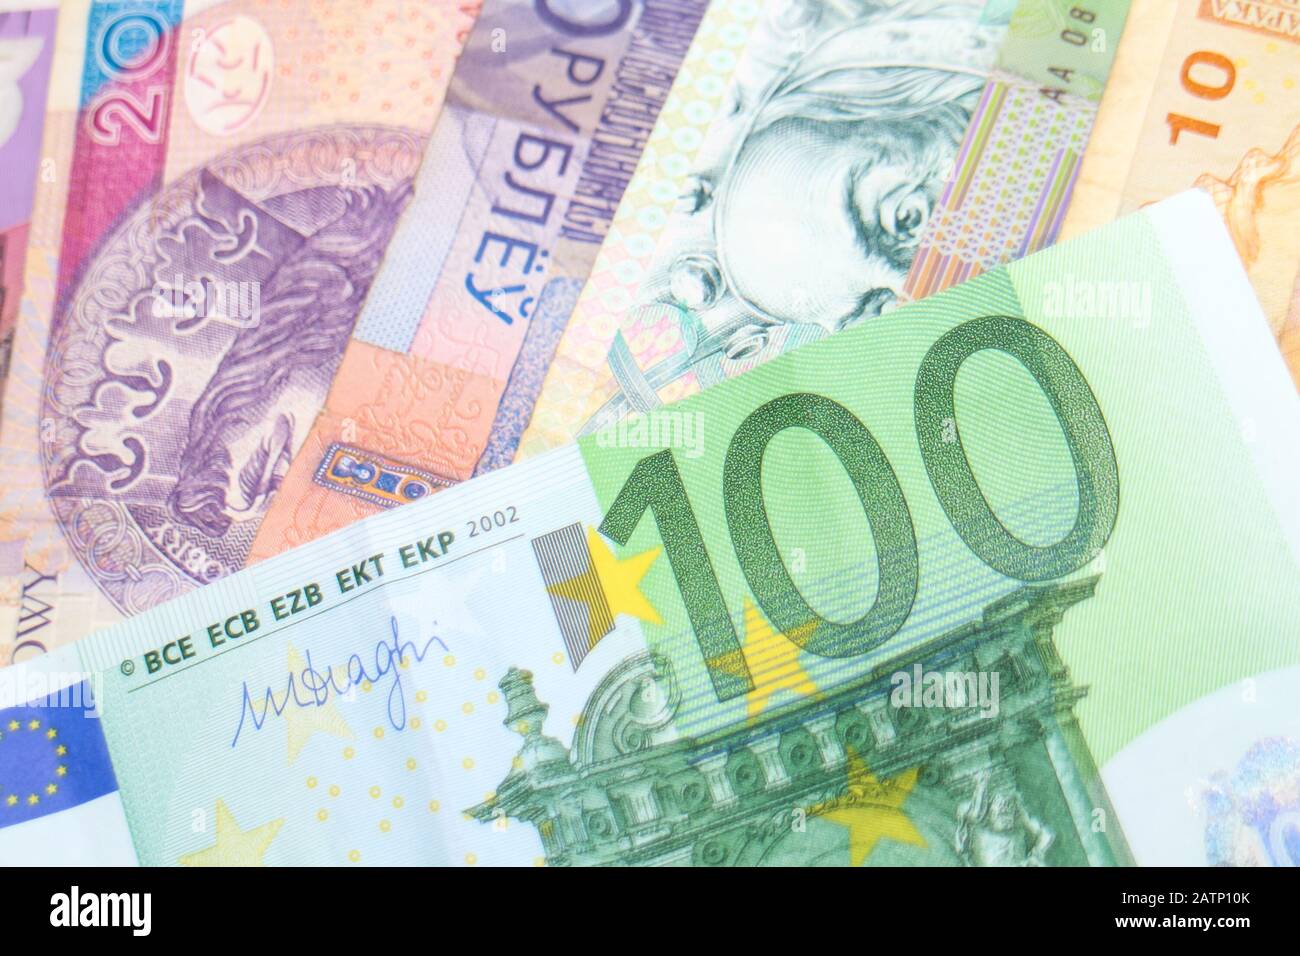 Un billet de 100 euros organisé sur une pile de billets arc-en-ciel de différentes devises mondiales, y compris des euros, Des Shekels, Rand et polonais Złoty. Banque D'Images